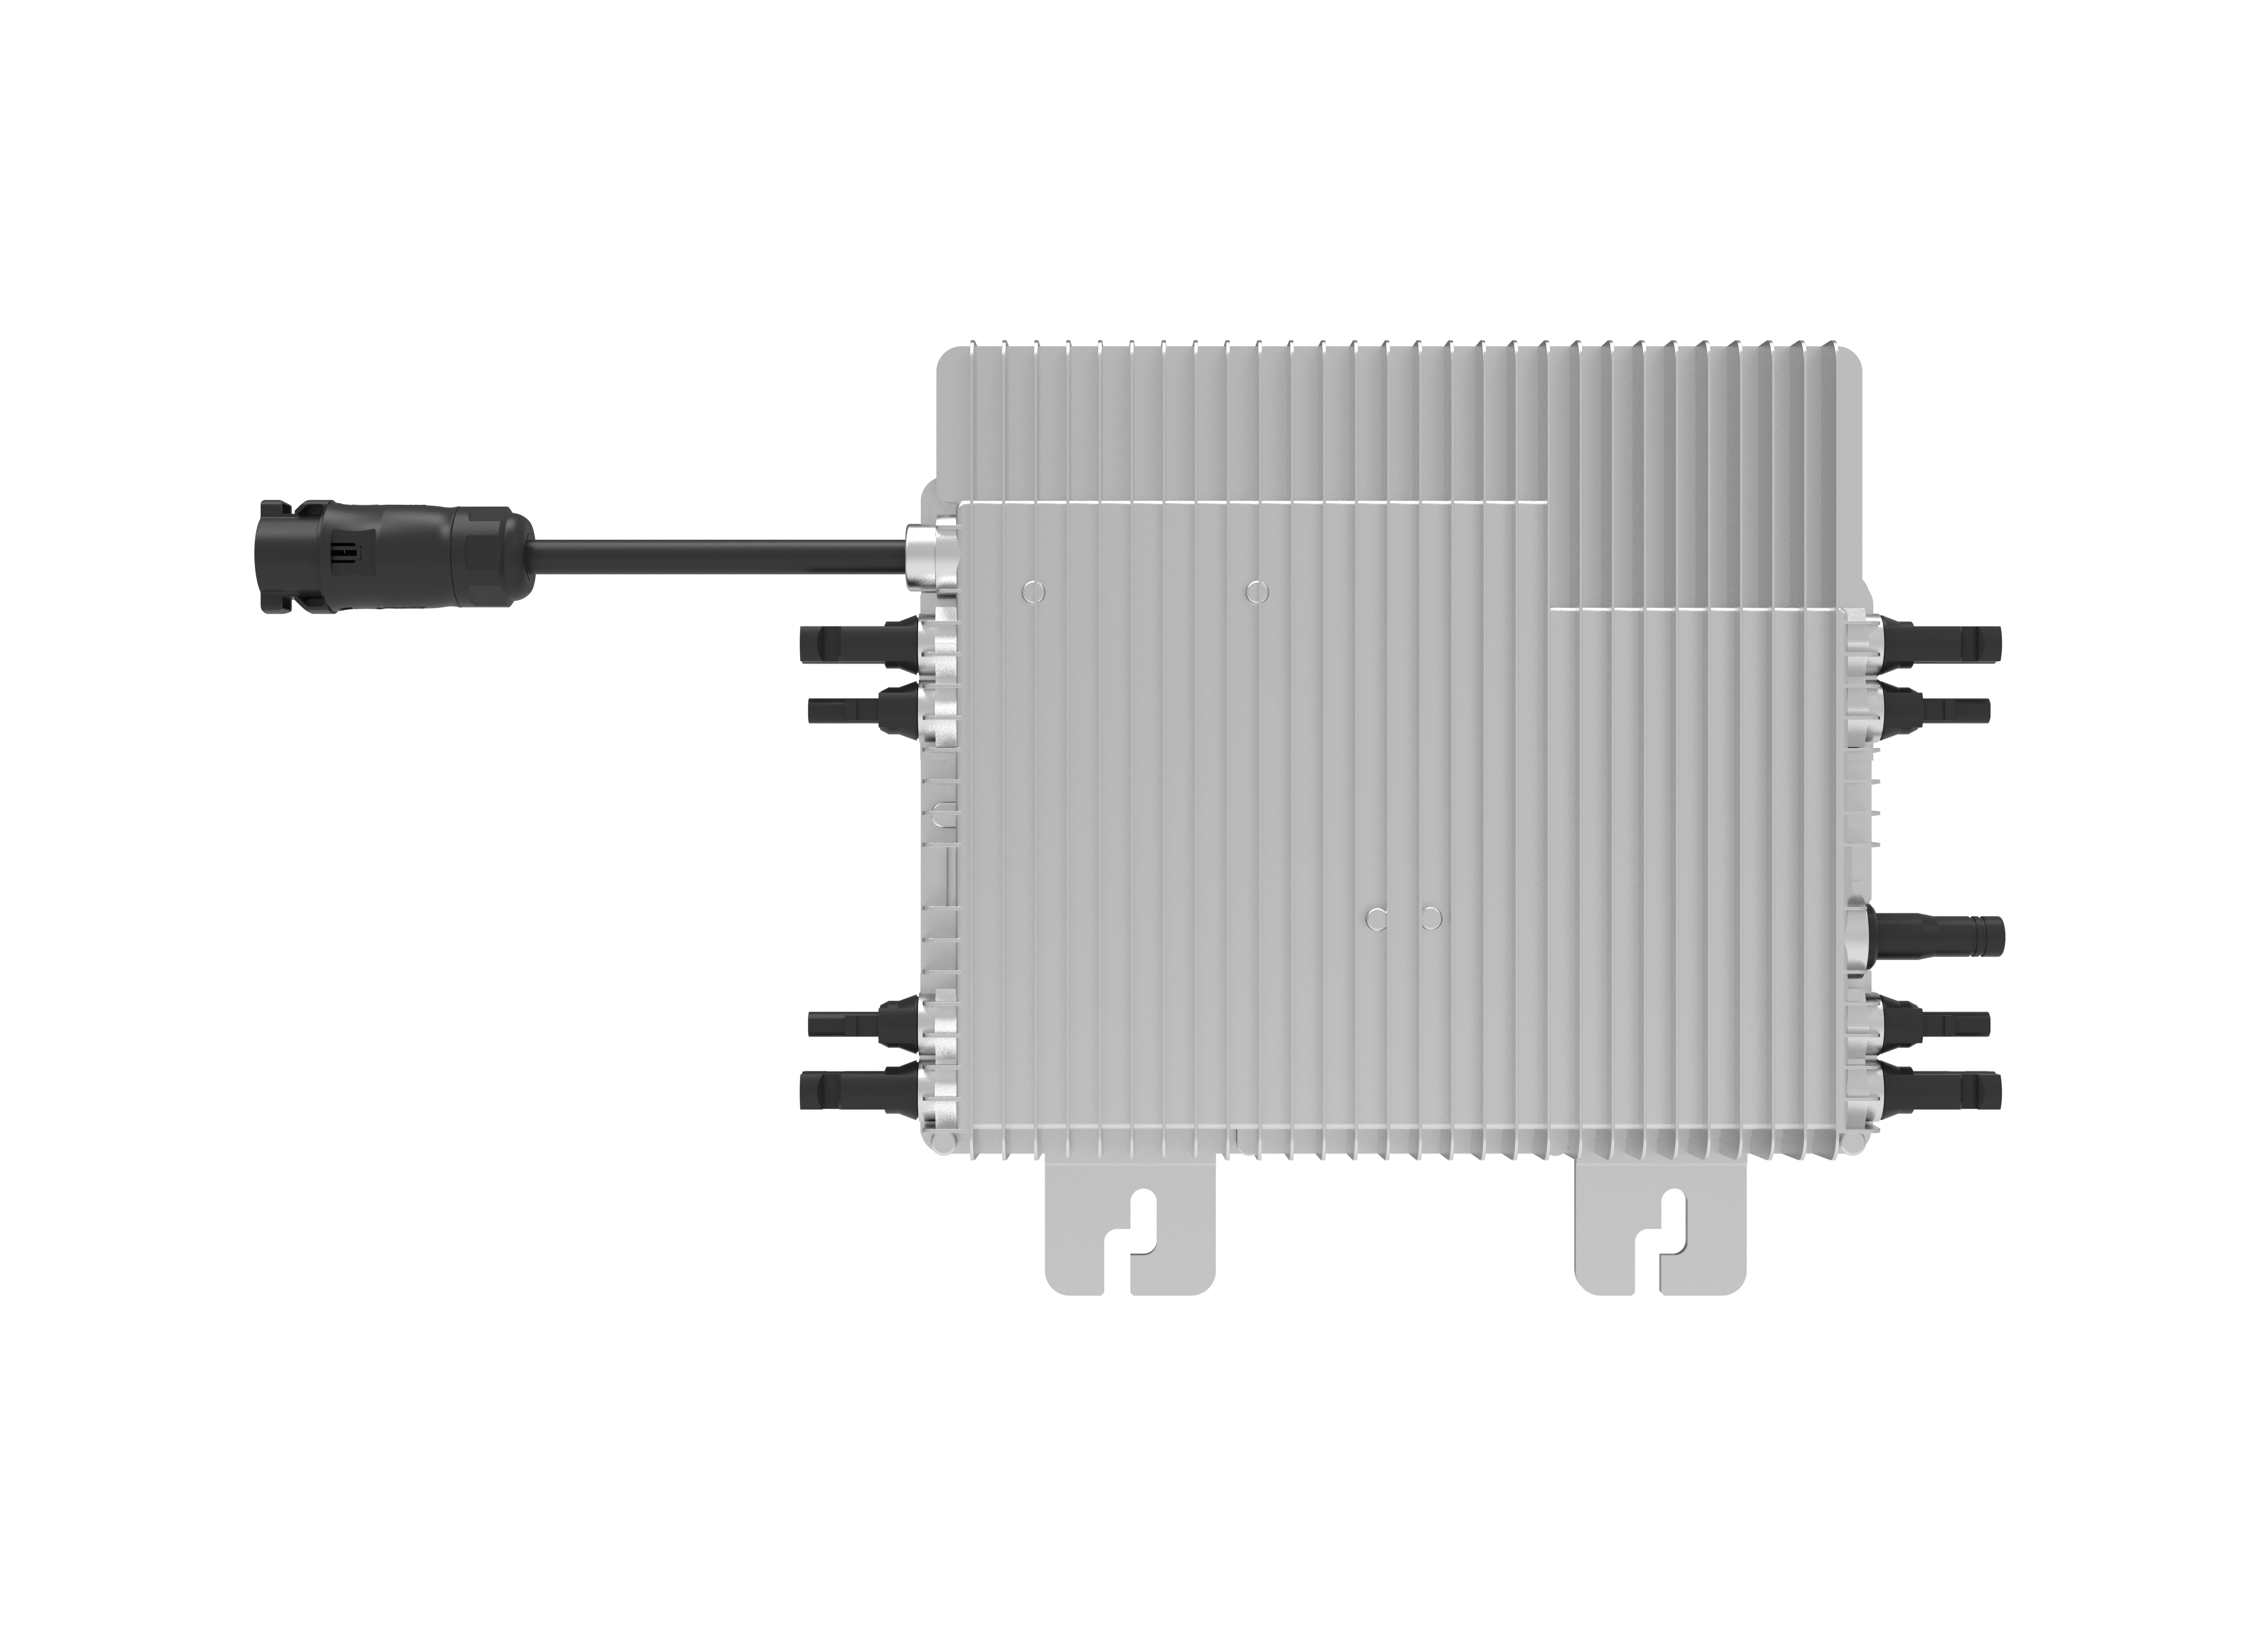 Deye 2000-G3/1600-G3 Micro-Wechselrichter für bis zu 4 PV-Module